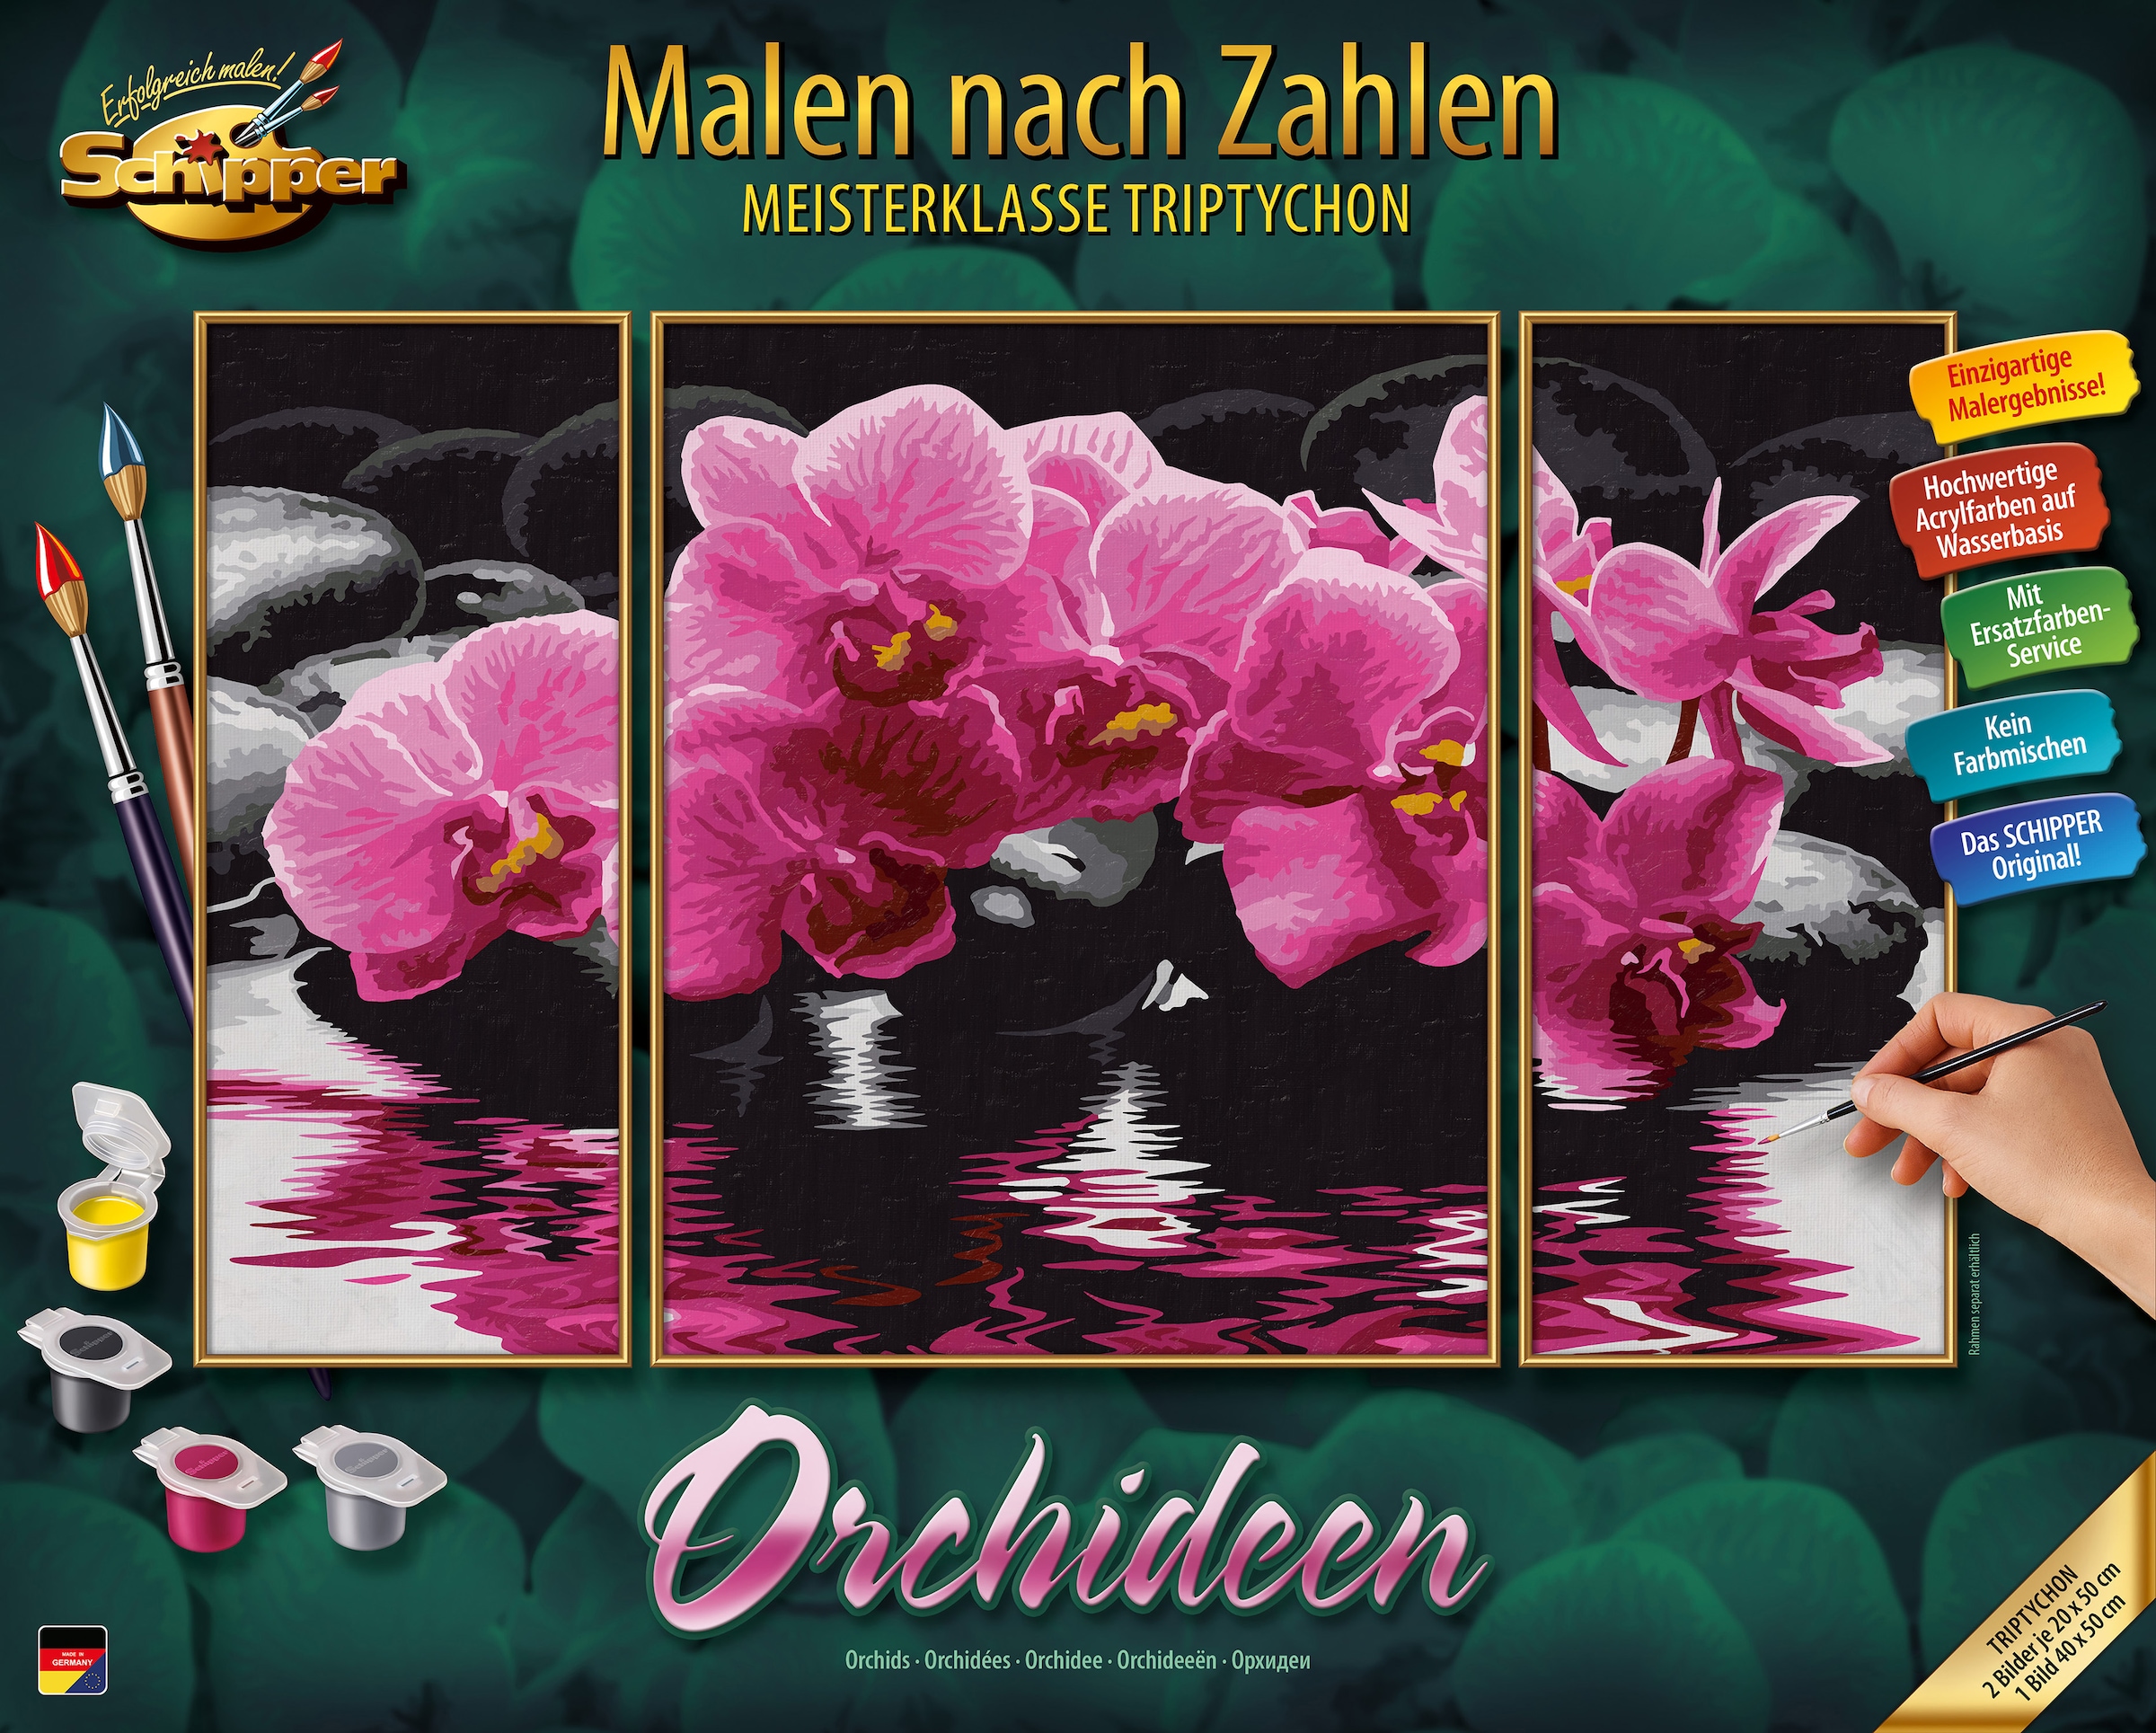 Orchideen«, bei Made Zahlen Schipper nach Triptychon »Meisterklasse Malen in - Germany